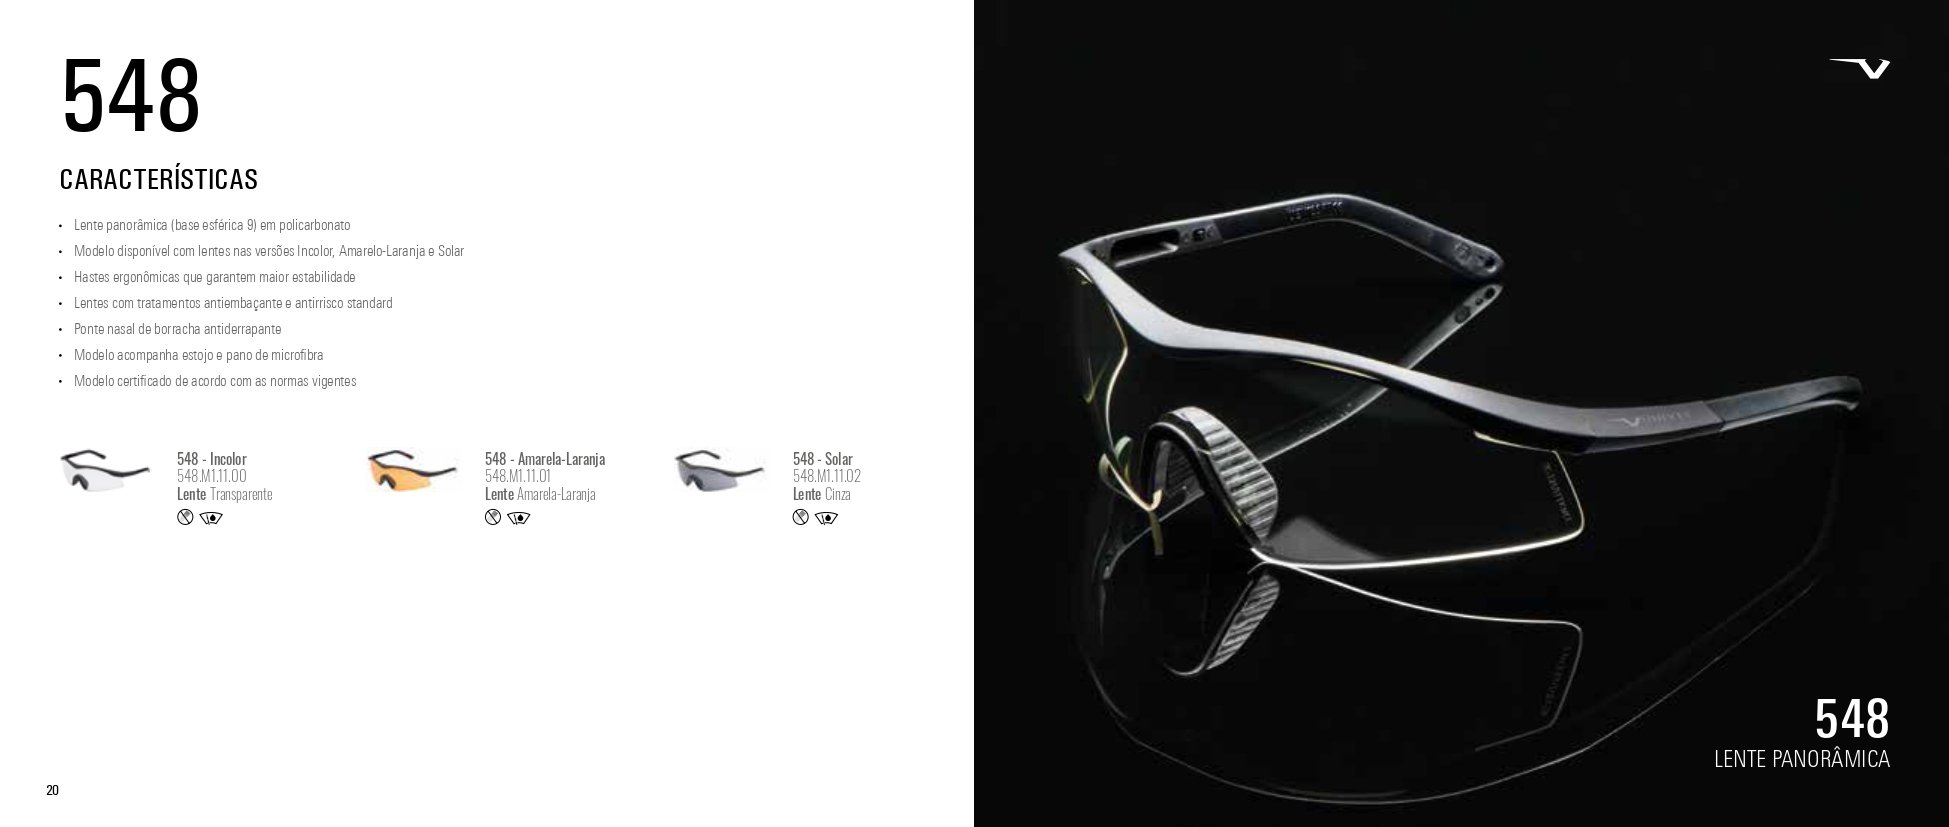 Óculos Segurança Ideal Airsoft Proteção Balistica 548 - 9